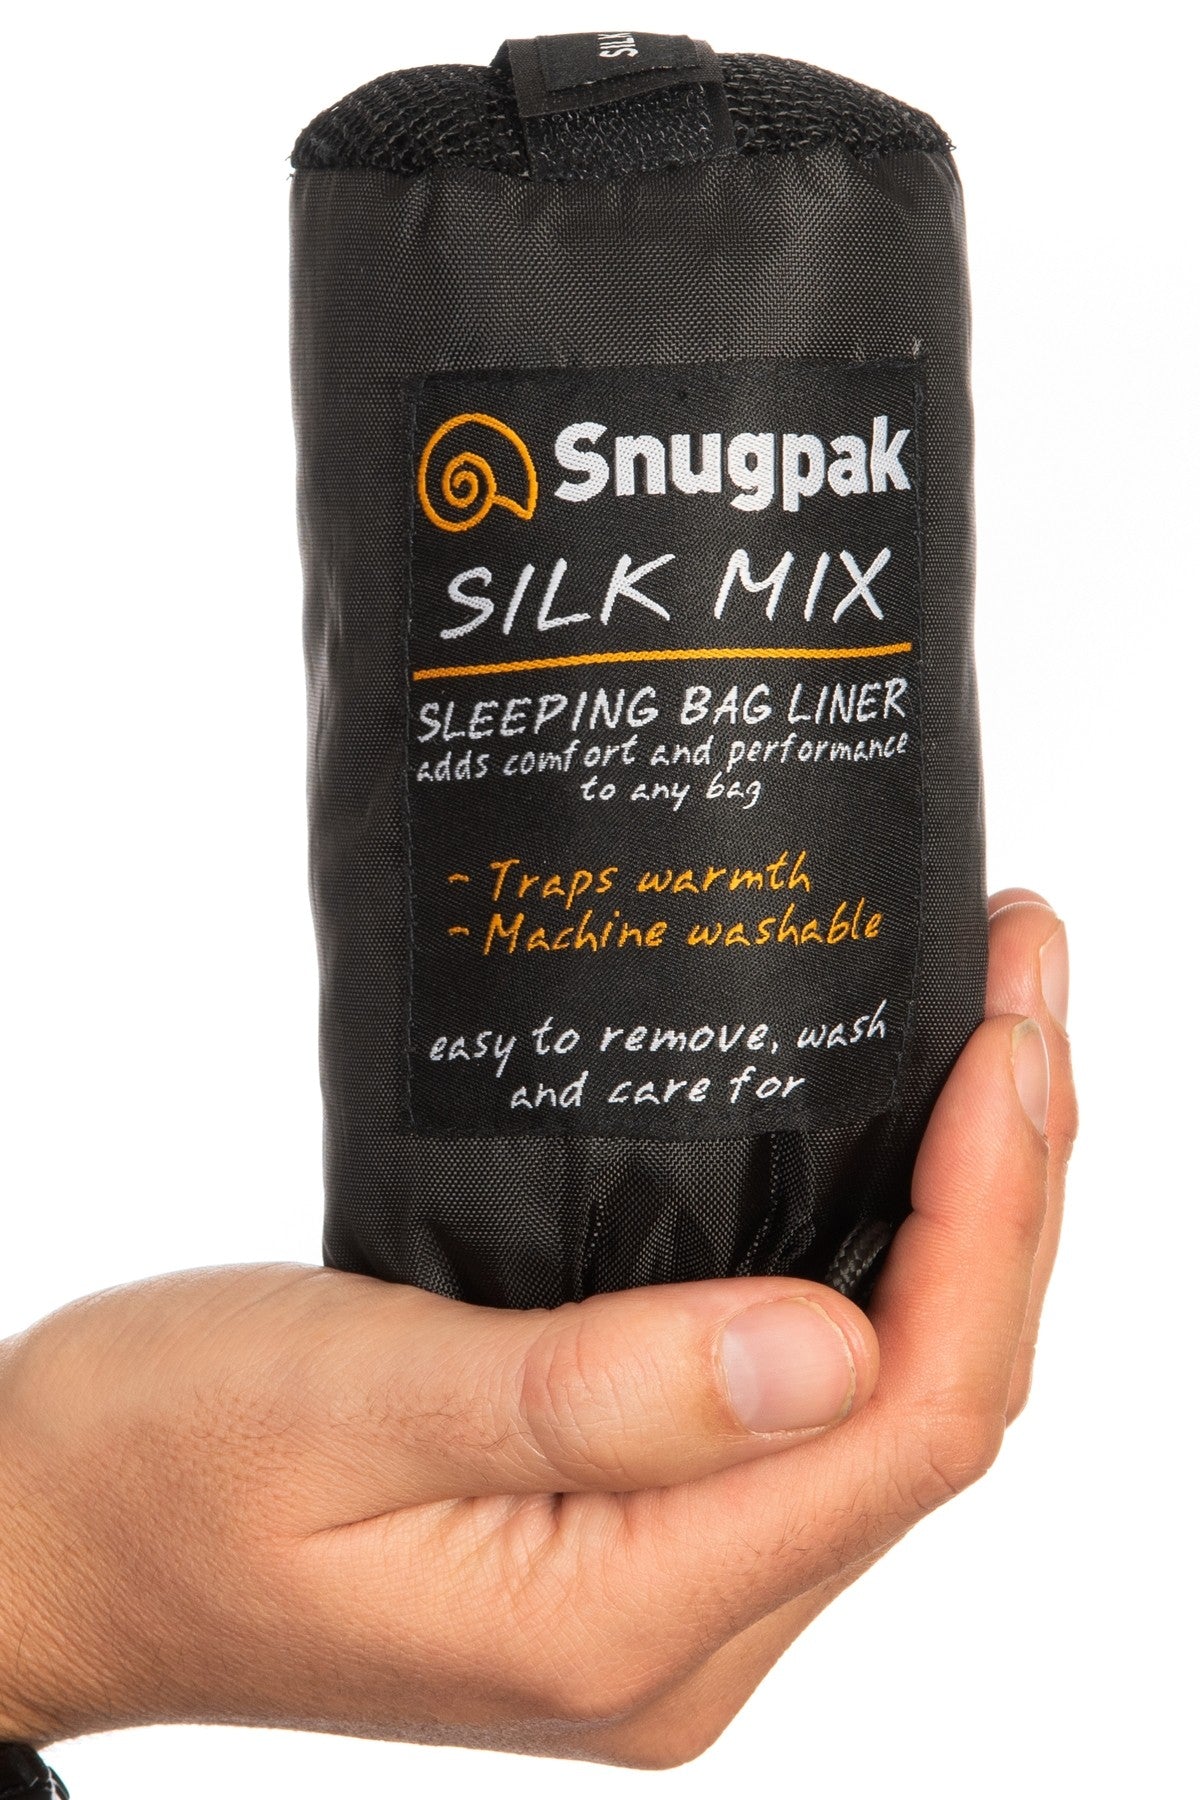 SNUGPAK SILK MIX SLEEPING BAG LINER - PACKED